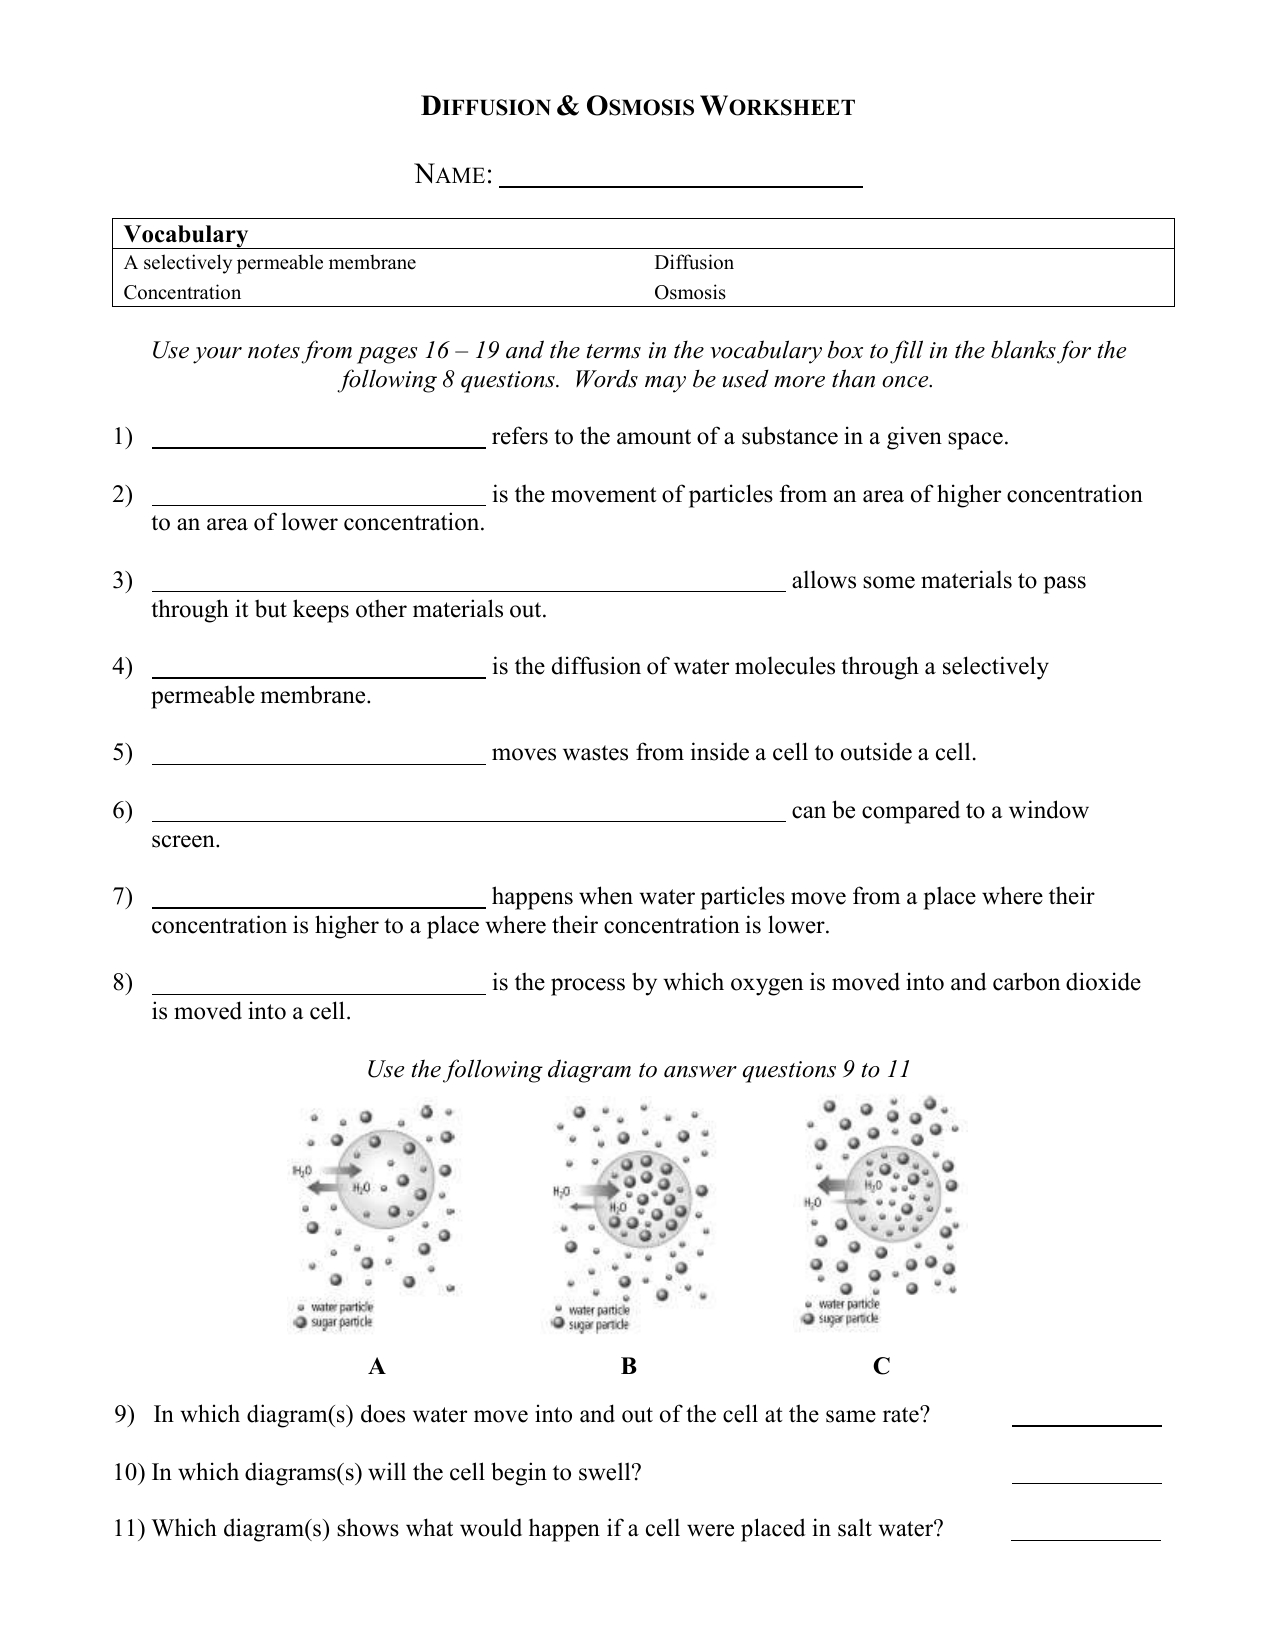 Diffusionosmosisworksheet 4 For Diffusion And Osmosis Worksheet